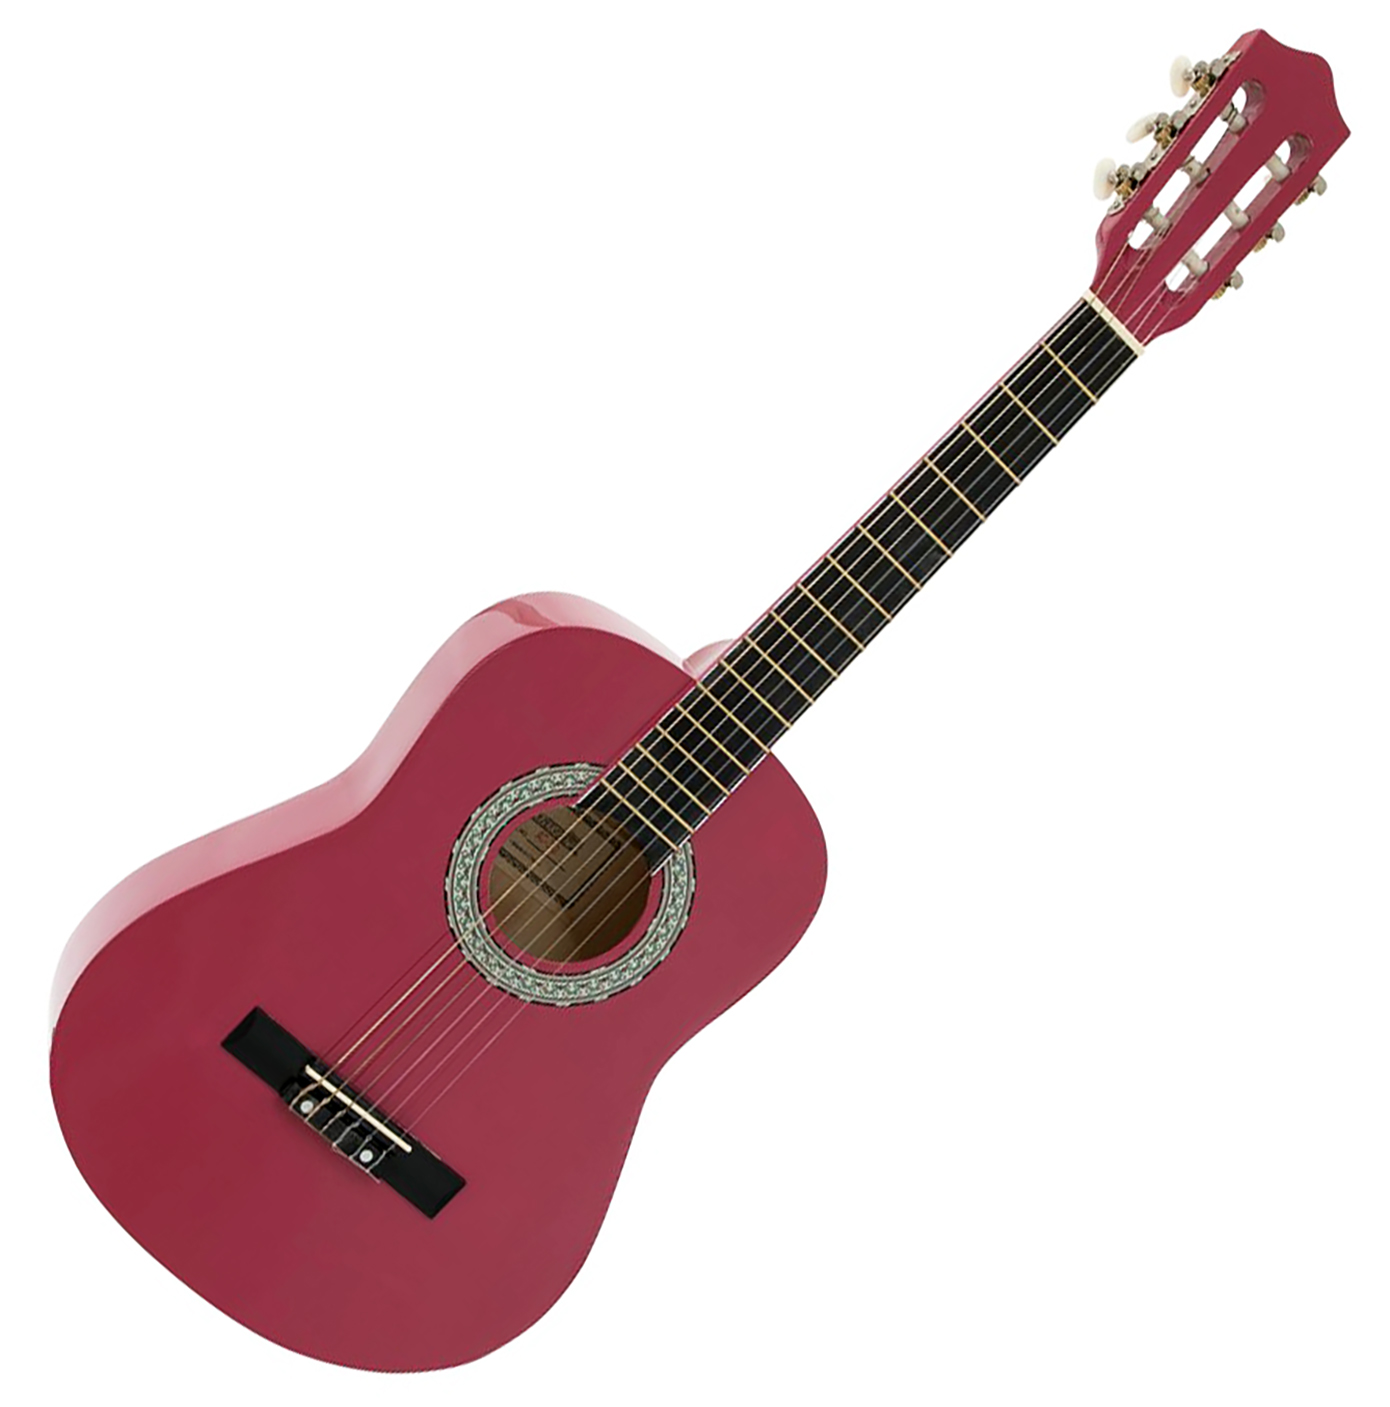 Se DiMavery AC-303 Klassisk Spansk Guitar 1/2 (Pink) hos SoundStoreXL.dk